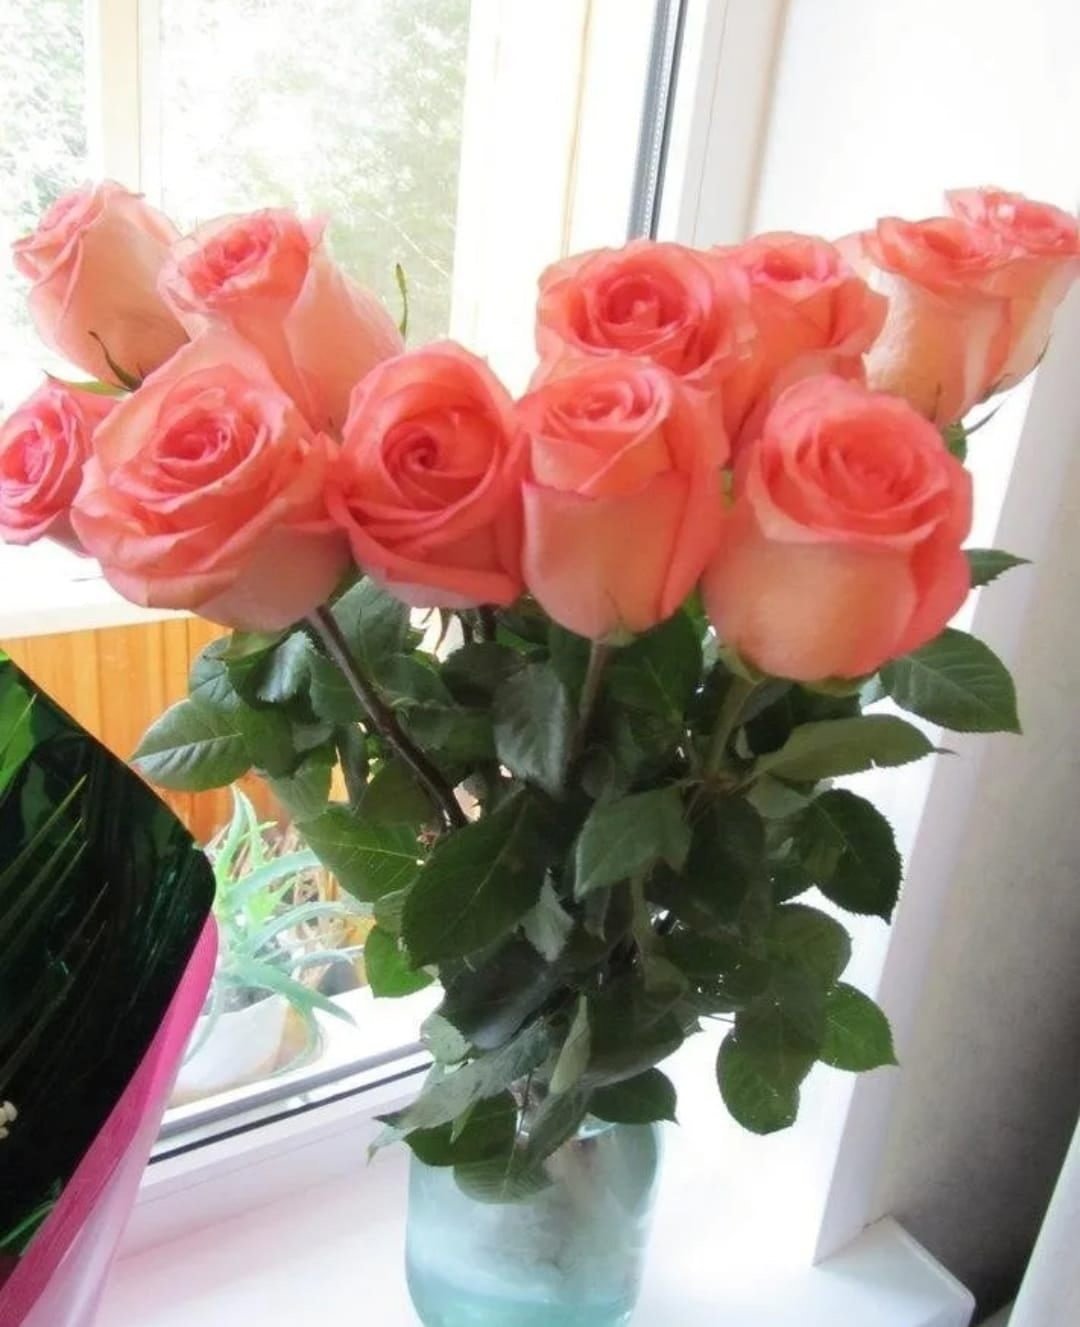 Фото реальных букетов цветов дома. Букет цветов на подоконнике. Красивый букет дома. Букет роз на подоконнике. Букет цветов в вазе дома.